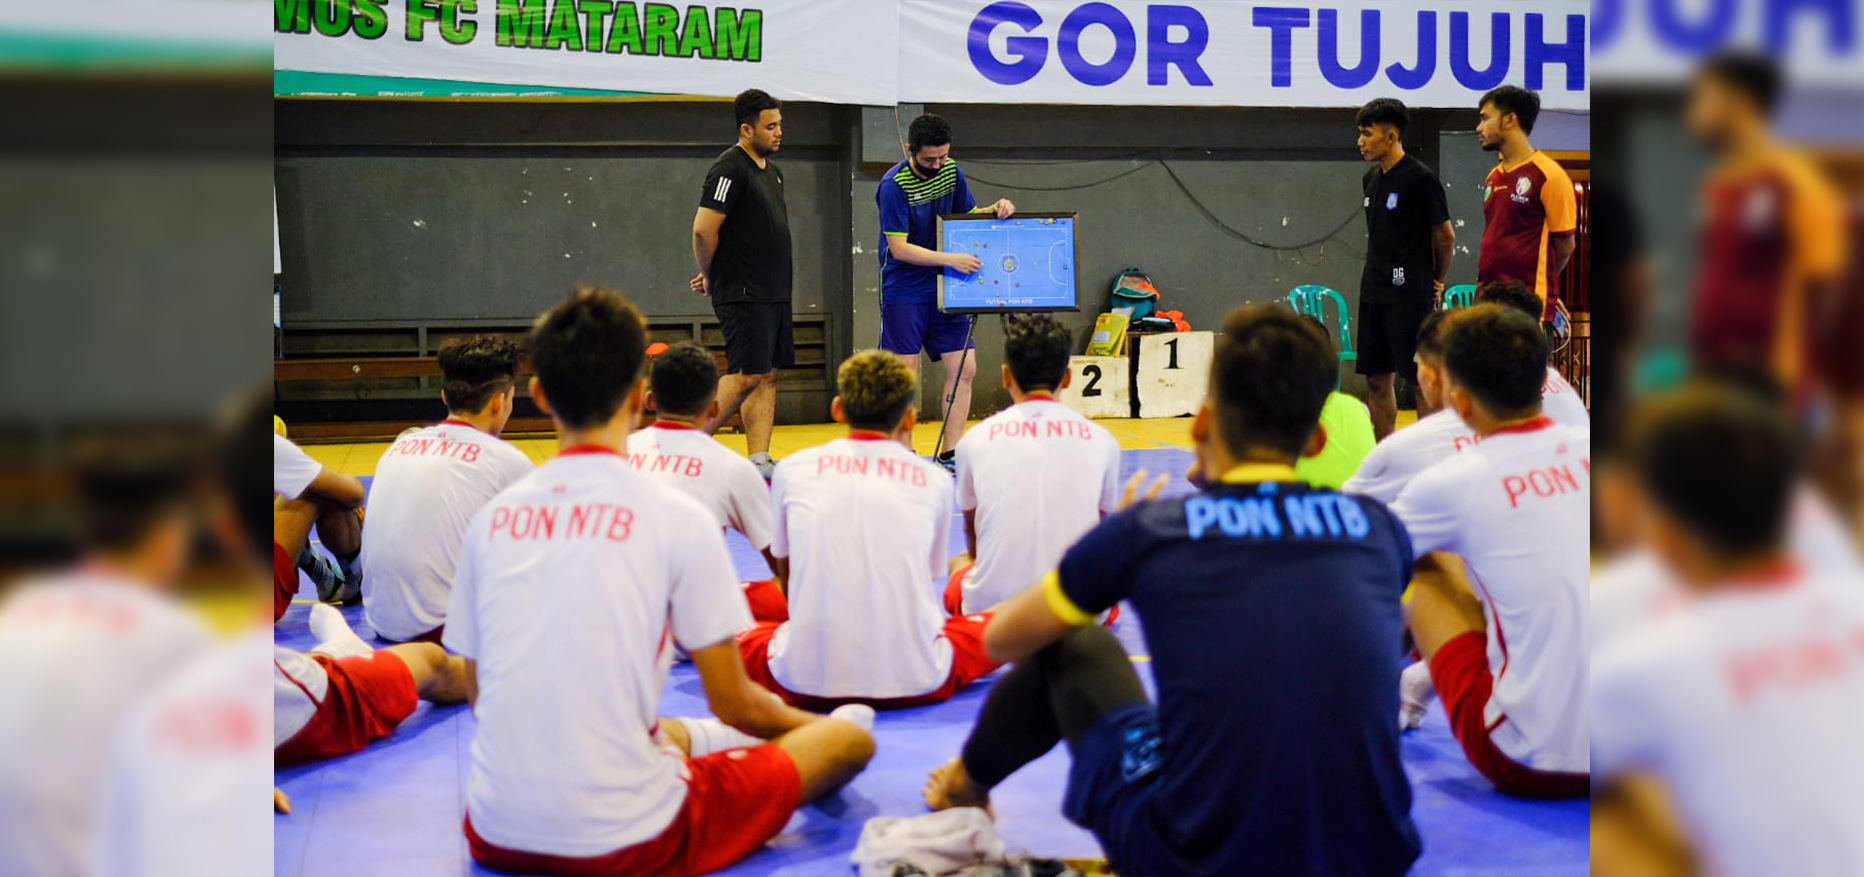 Coaching Clinic dari Coach Ken saat Kunjungan Singkat di Lombok